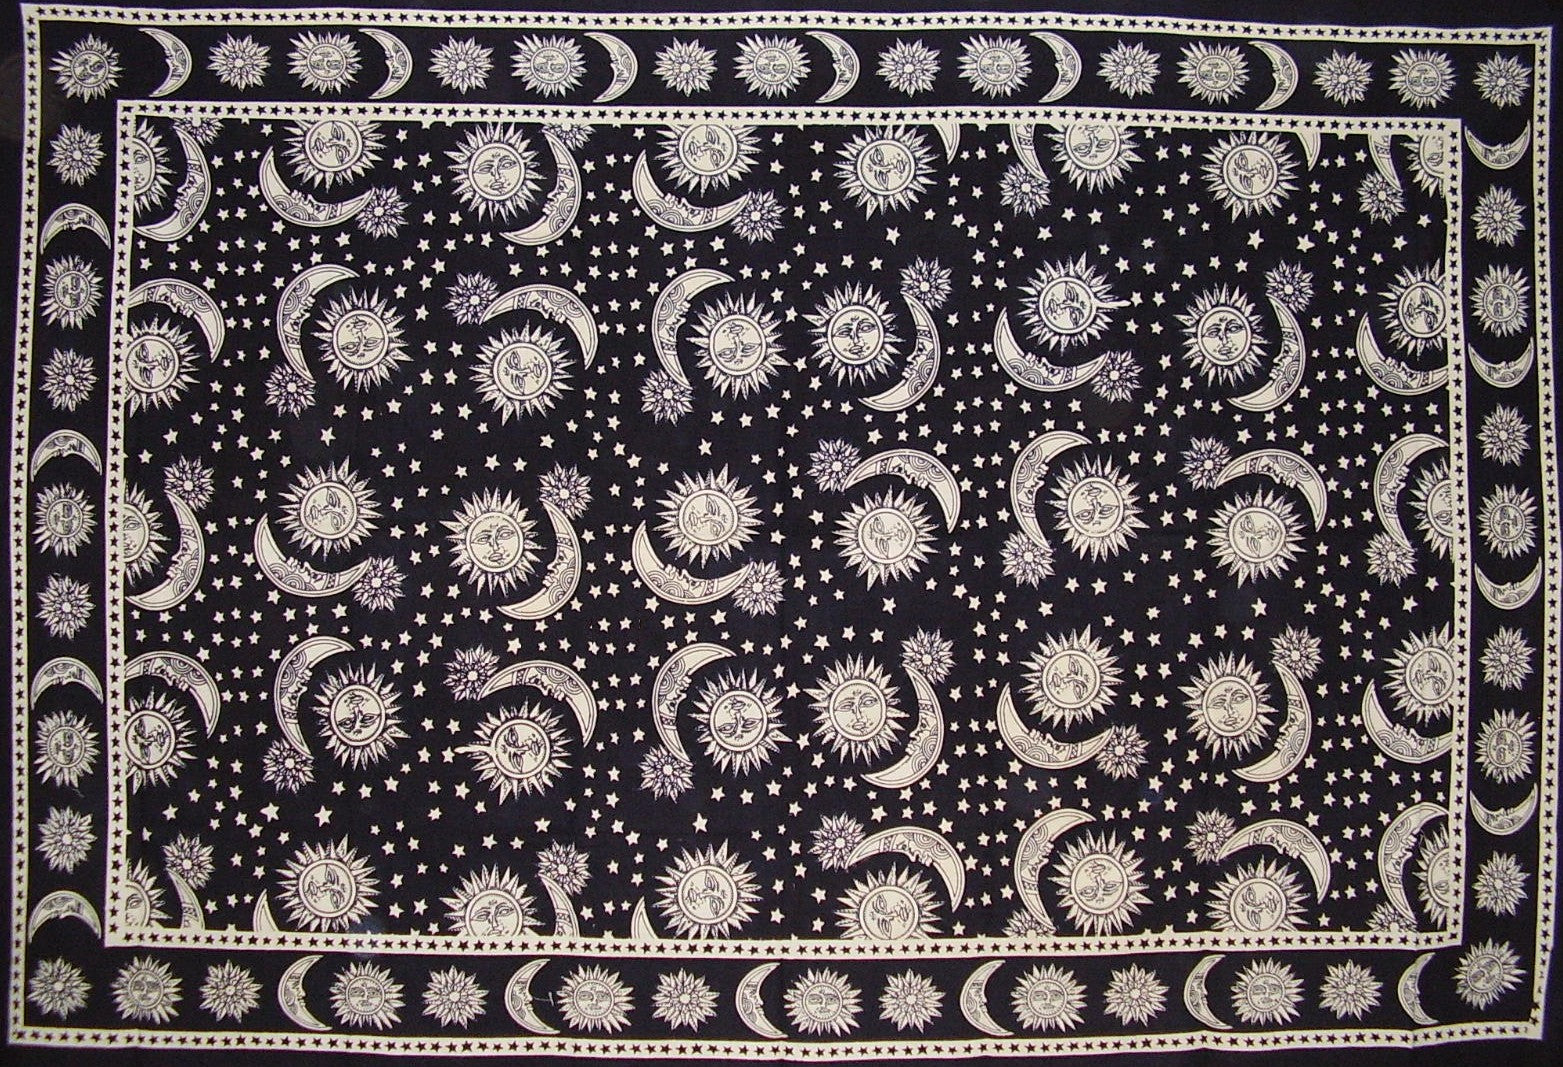 Diffusione celeste in cotone o tovaglia 90" x 60" in bianco e nero